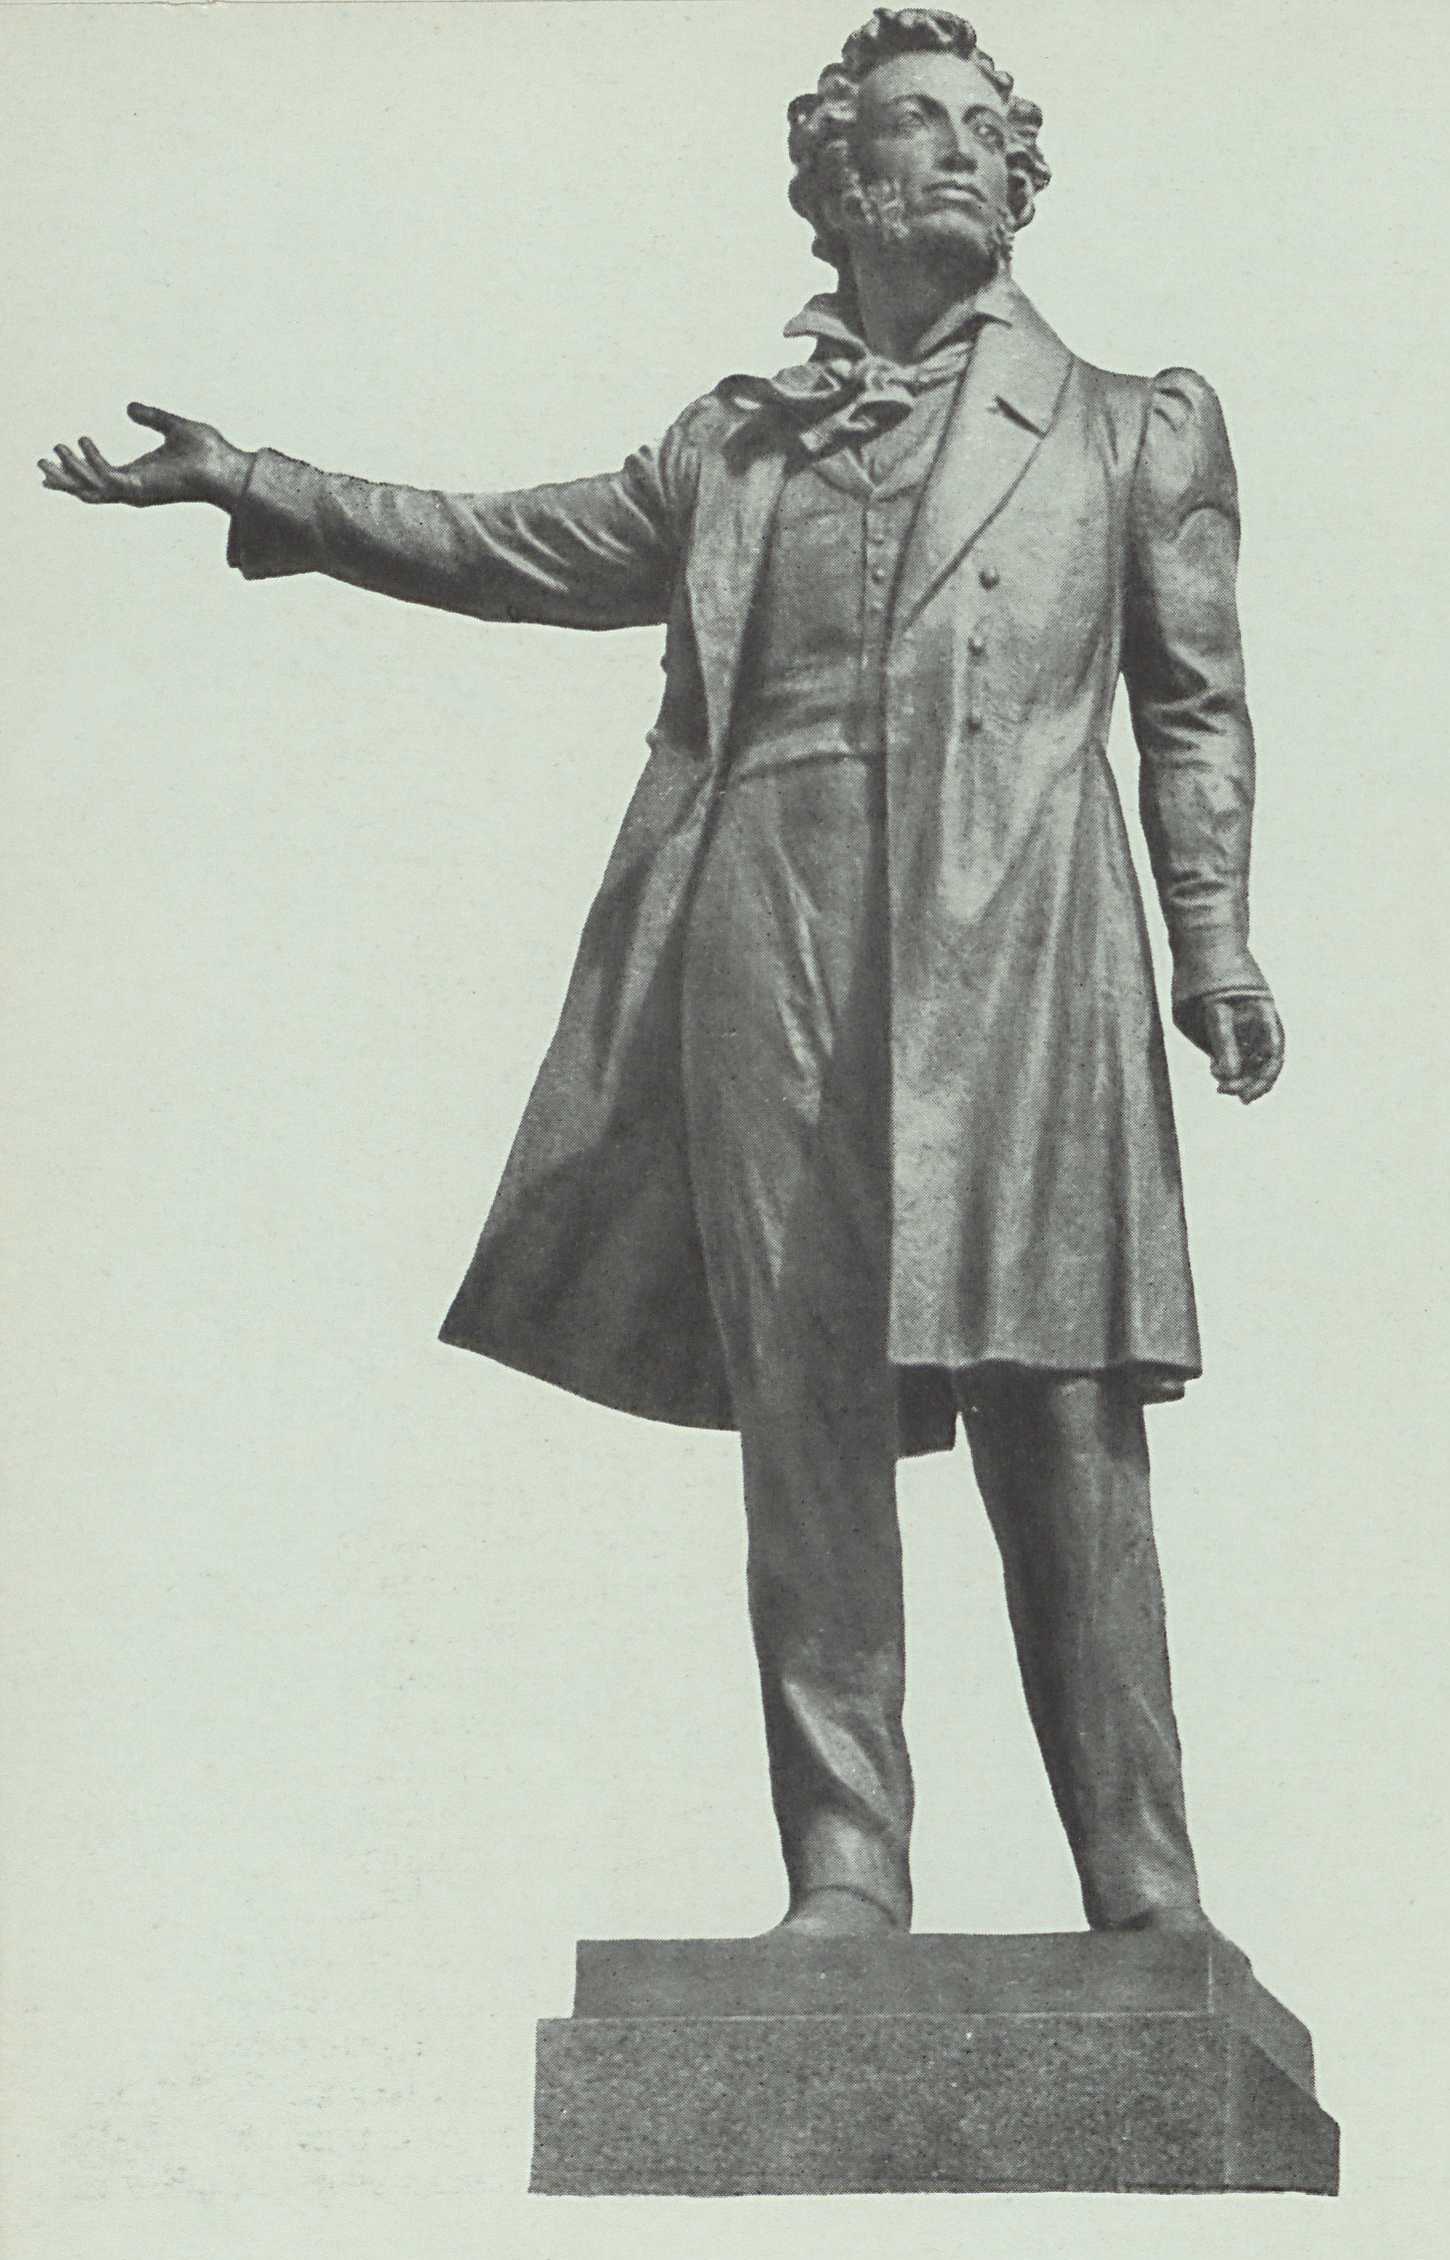 Скульптор М. Аникушин, архитектор В. Петров. Памятник А. С. Пушкину в Ленинграде. 1957.